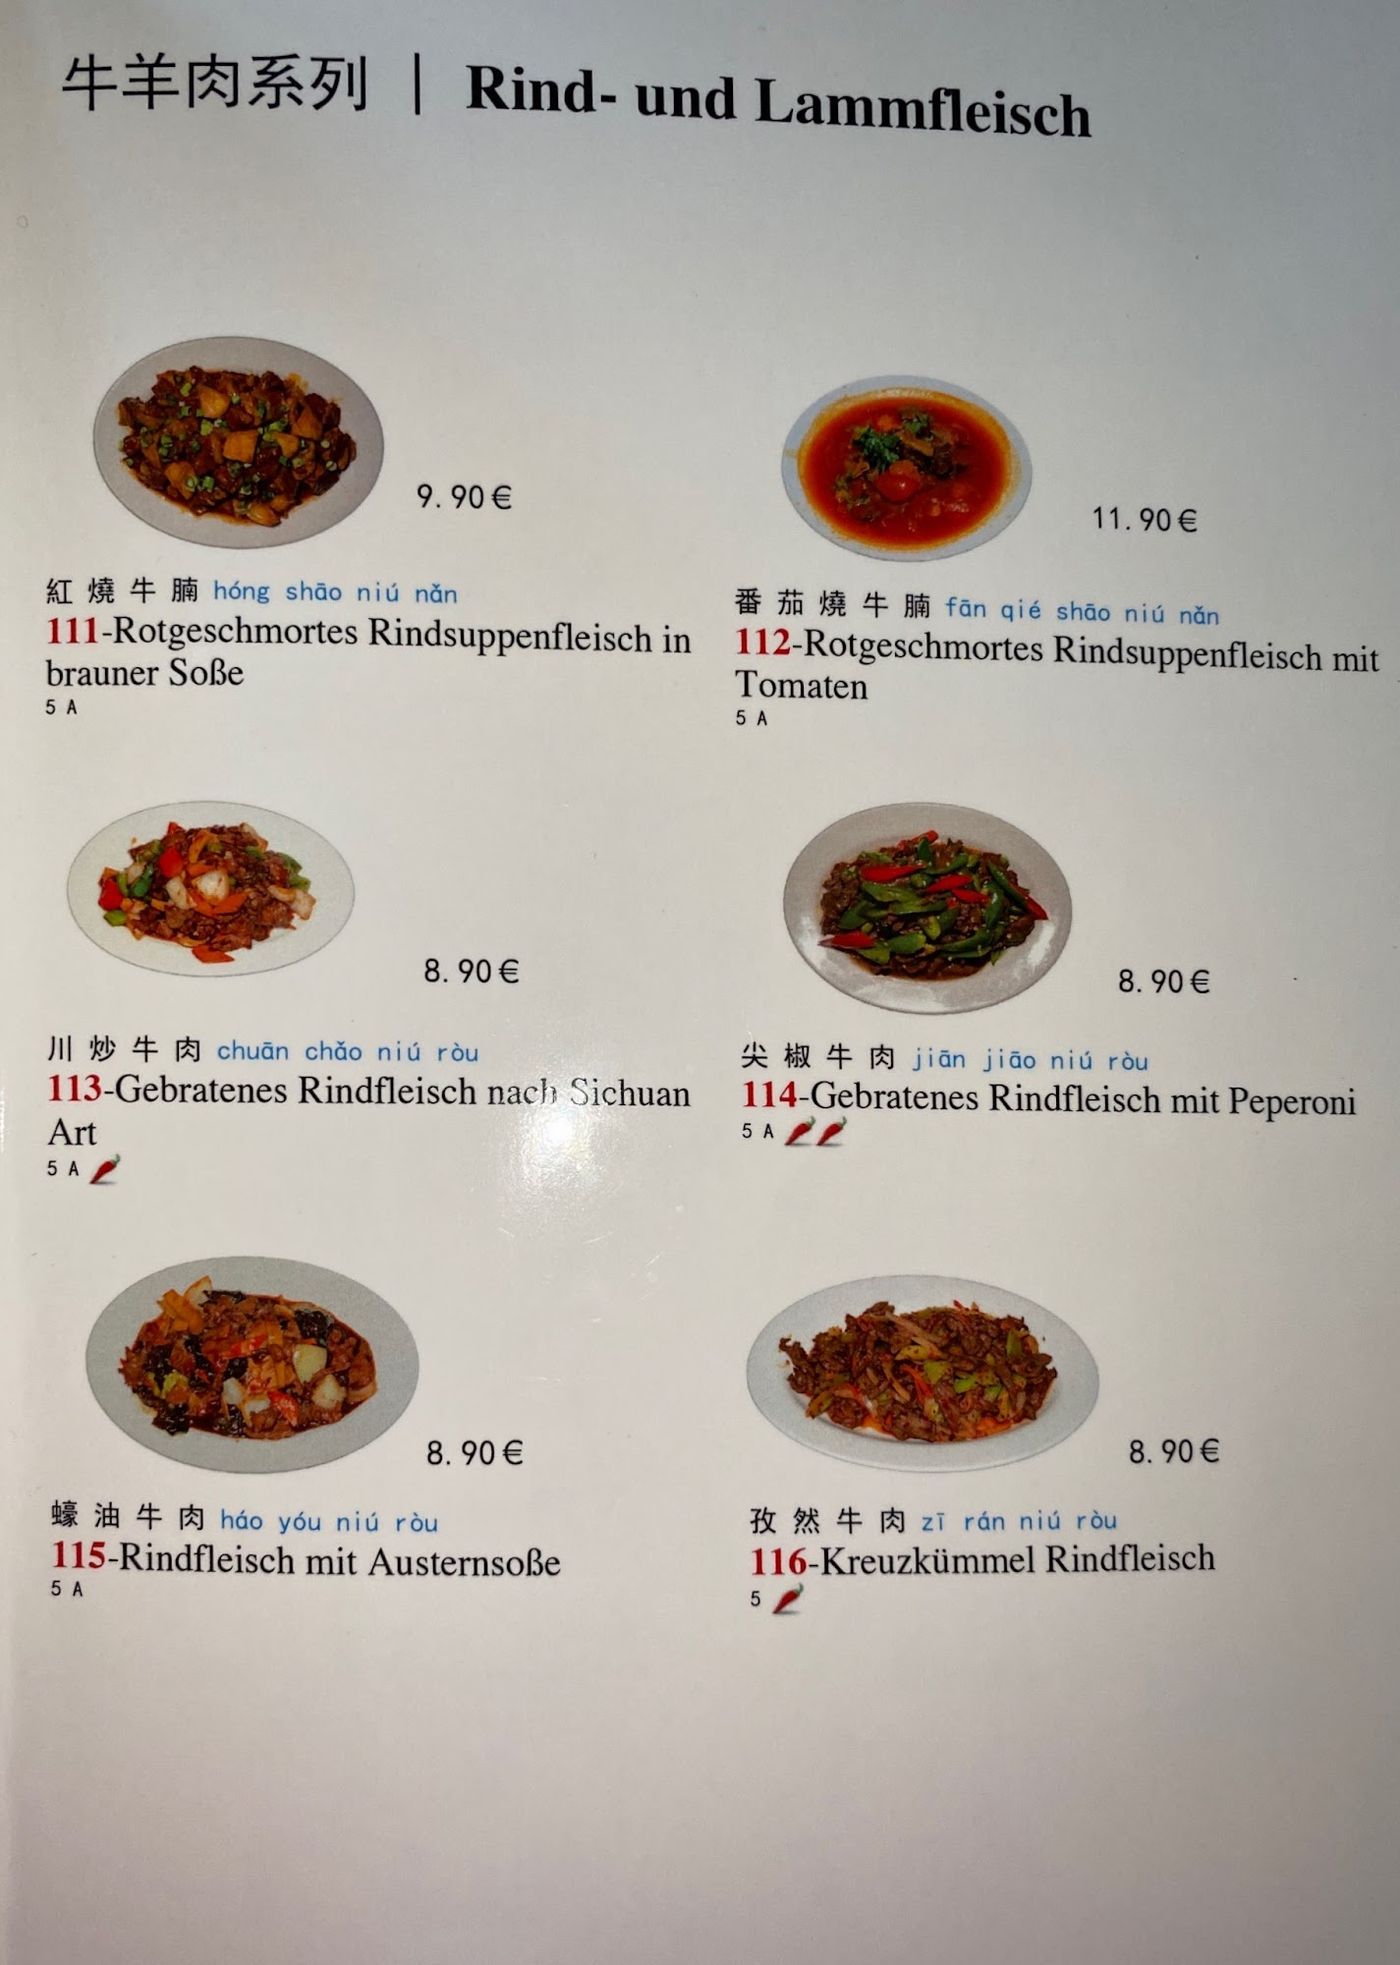 Authentische chinesische Küche erleben